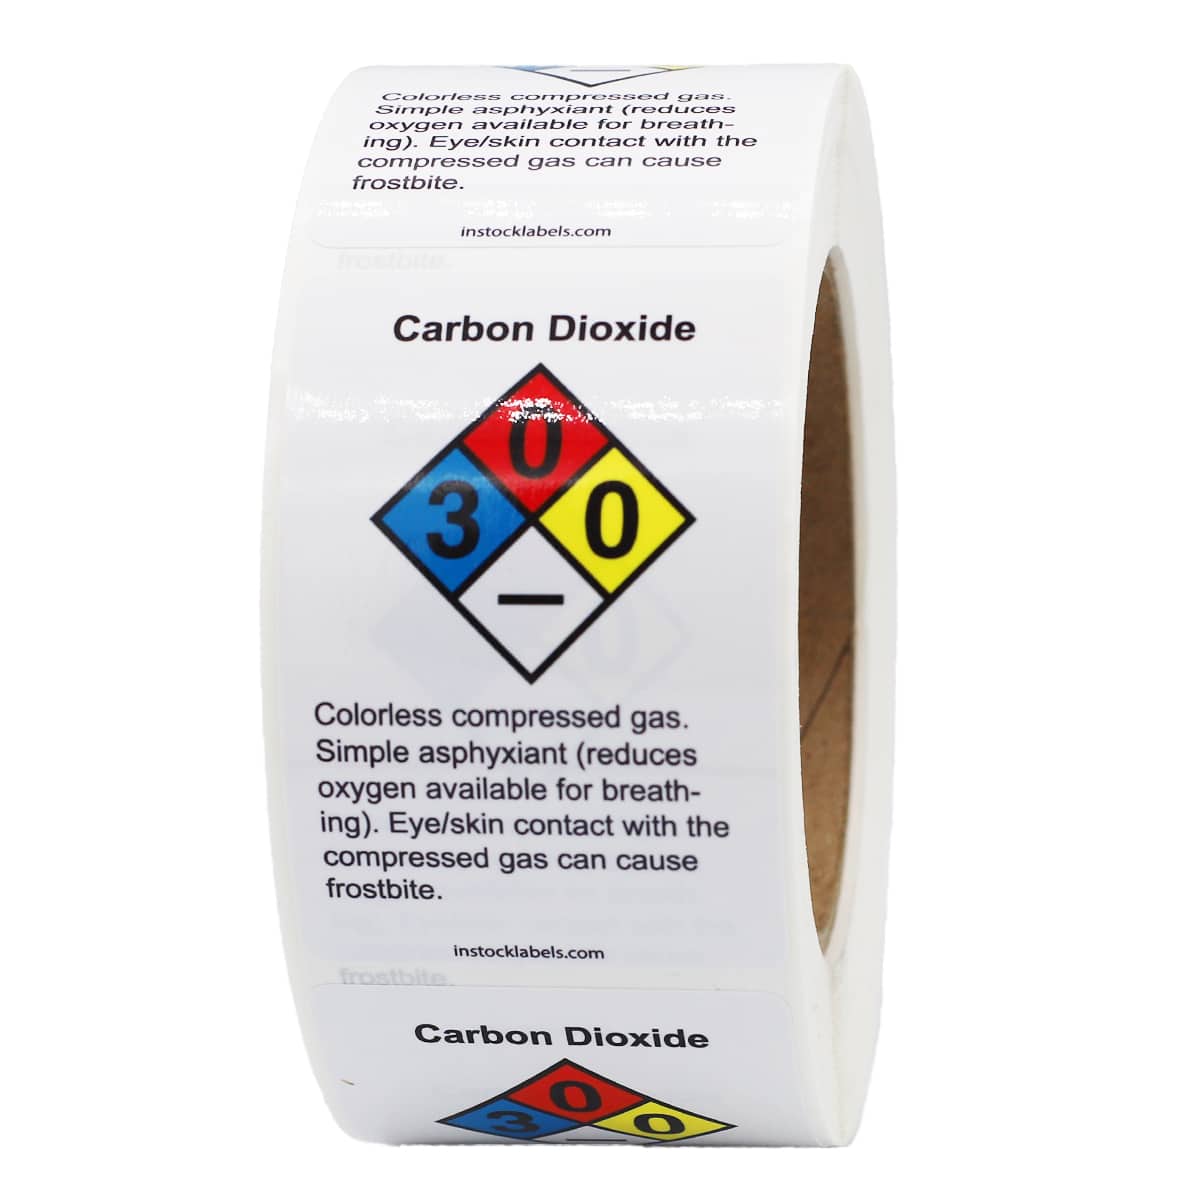 Carbon Dioxide Nitrogen Gas Chemical Nfpa Labels Instocklabels Com